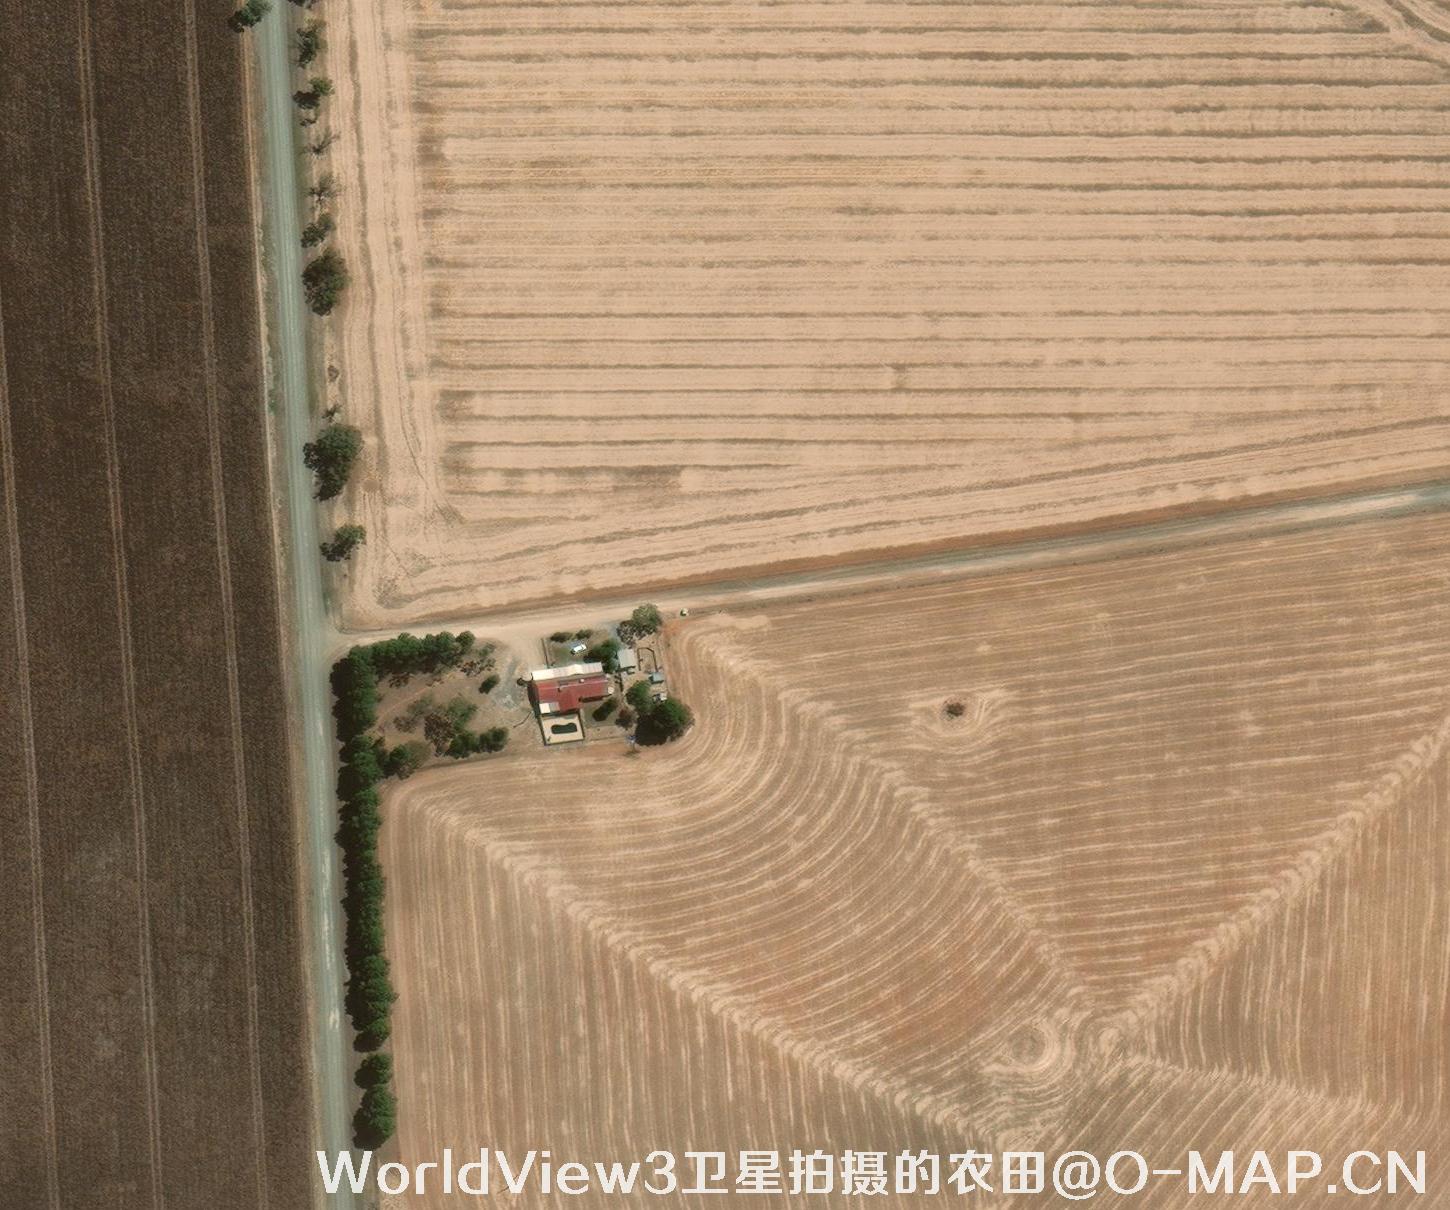 WorldView3卫星拍摄的0.3米卫星图片